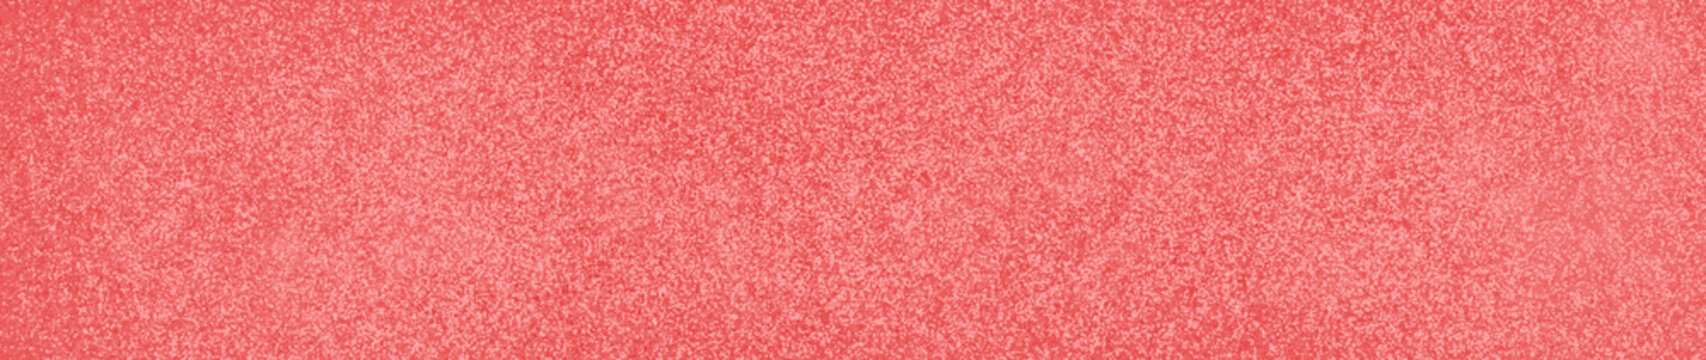 superficie ´porosa , grunge,  abstracto  texturizado rosa, rojo , pastel, con brillo. Para diseño, vacio, bandera web, ruido, granoapero, pancarta, textura de tela, de  cerca, elegante, vibrante